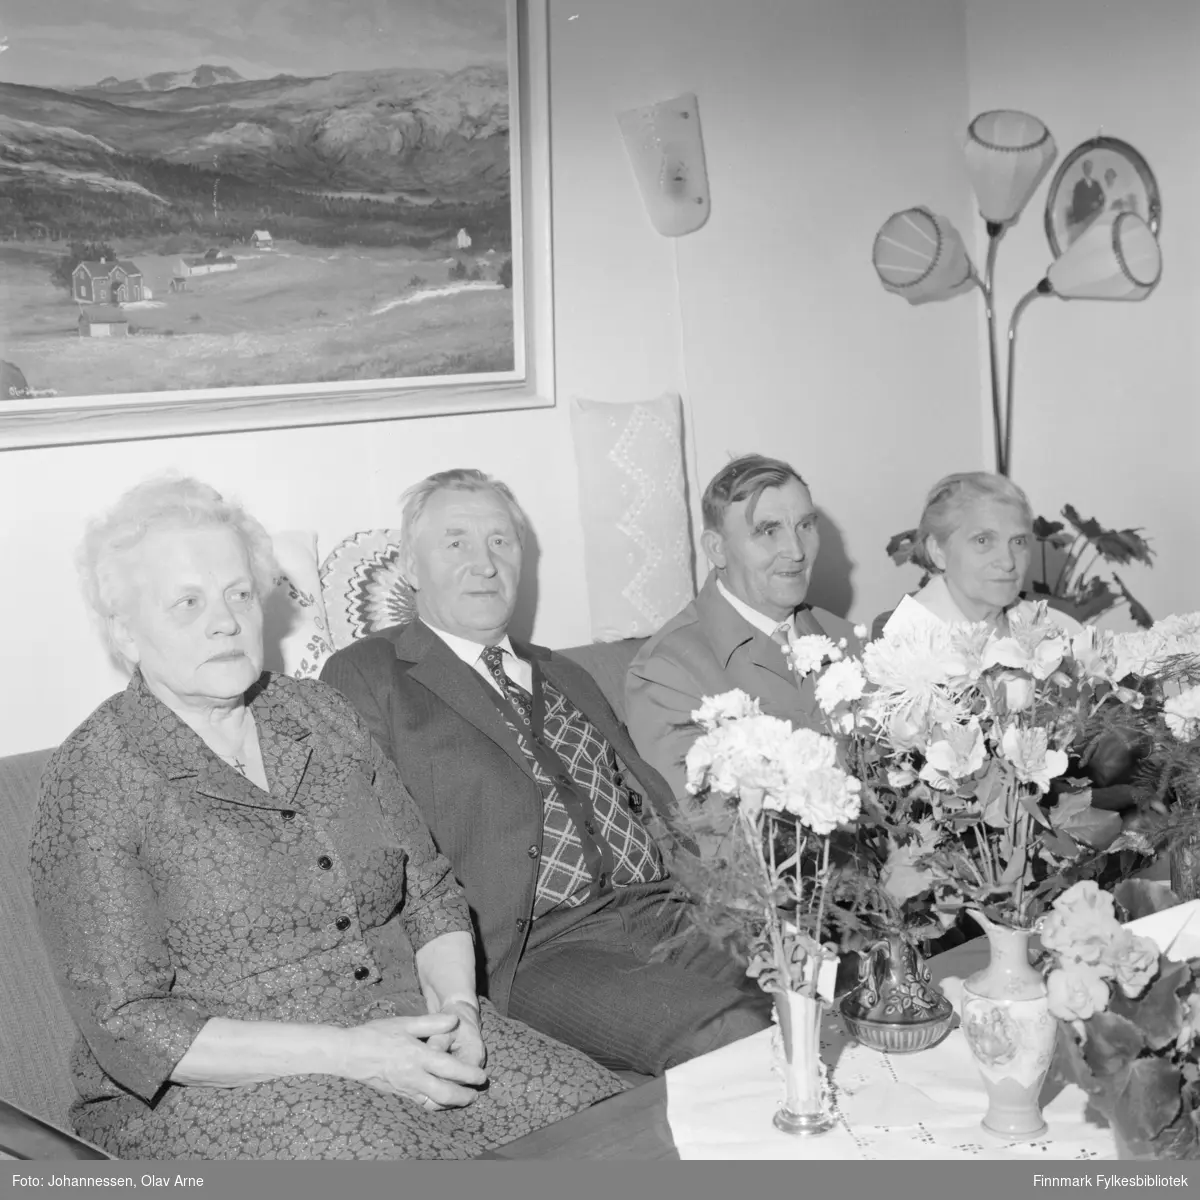 Fra venstre Laura Olsborg og mannen Peder Olsborg, Olav Johannessens maleri i bakgrunnen

Resten er ukjente 